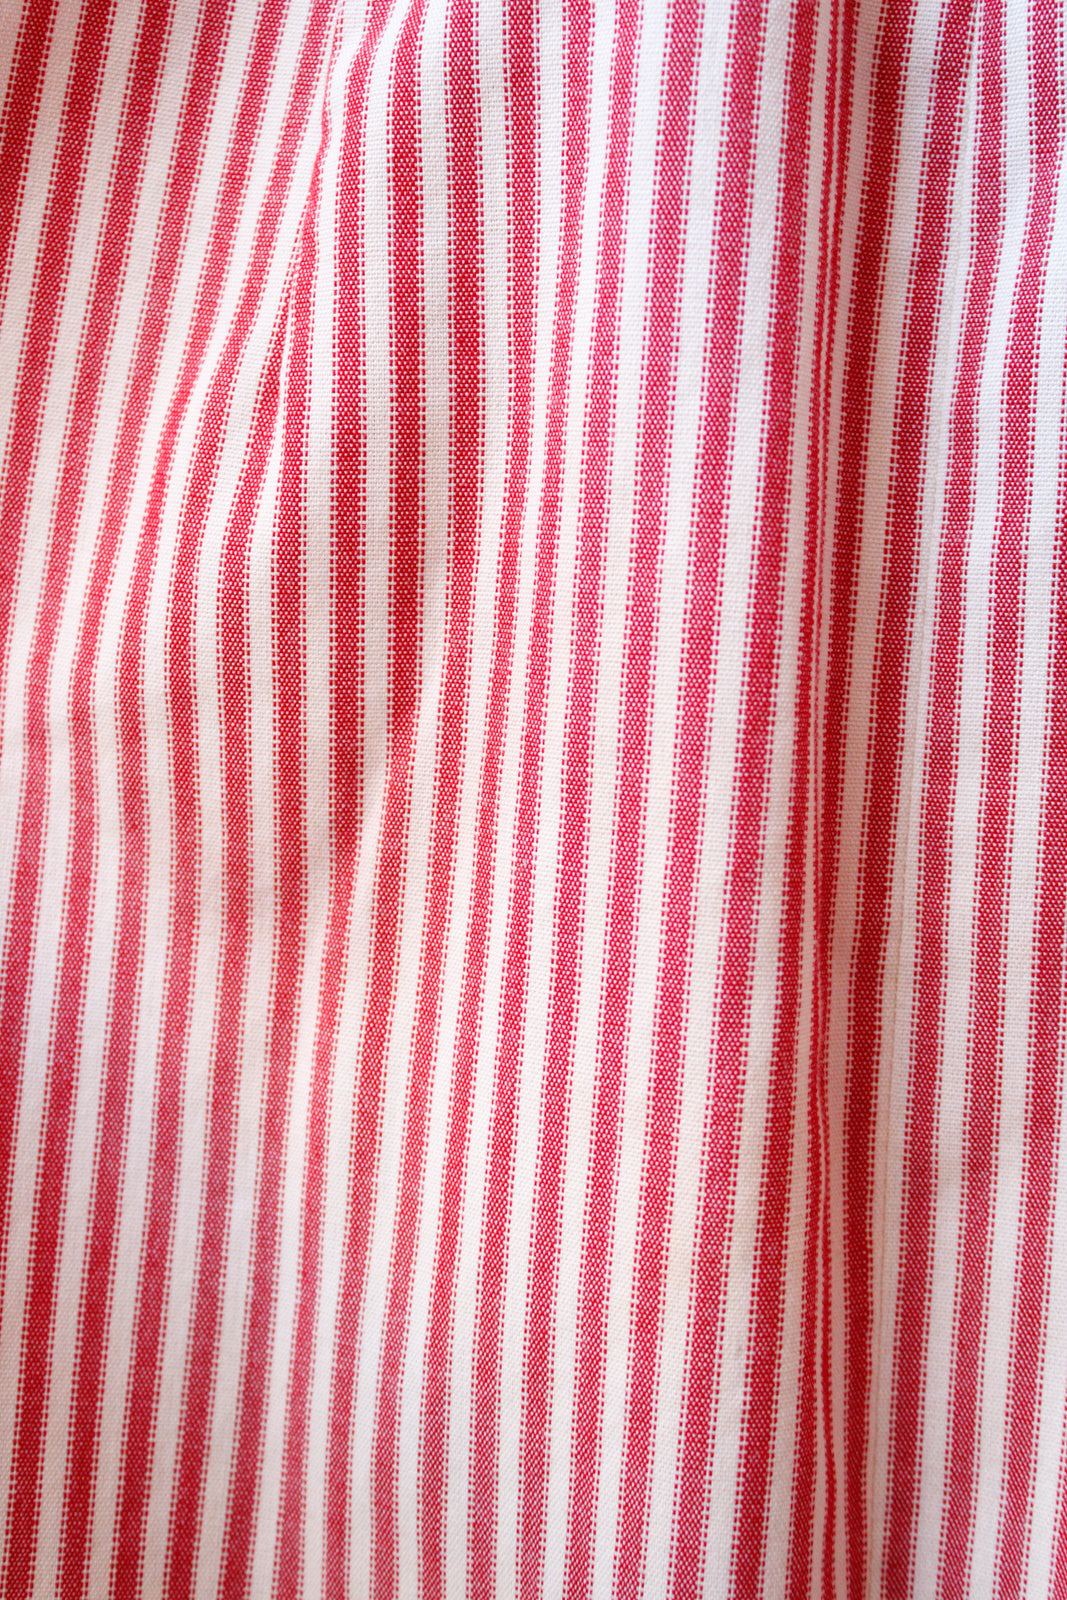 1960s Candy Stripe Sheath Wiggle Dress - Xsmall